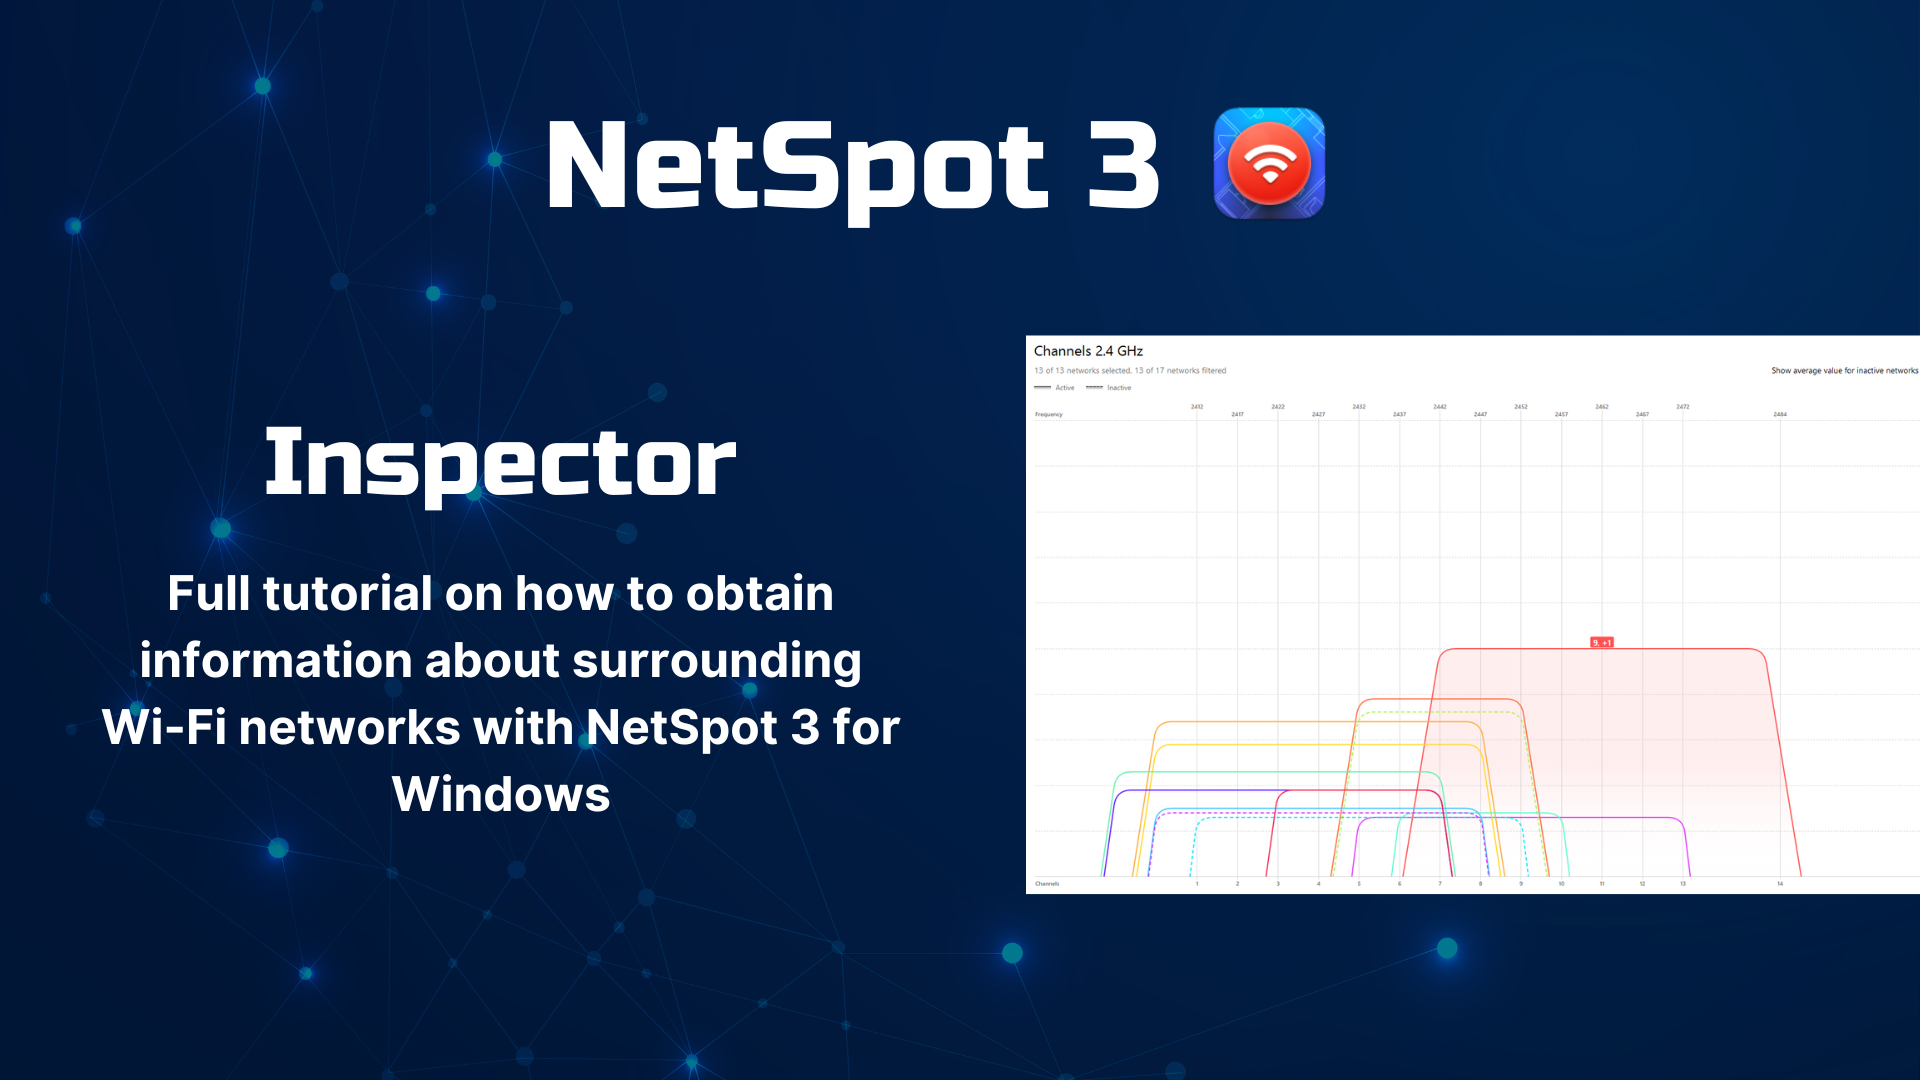 NetSpot 3 Inspector Video